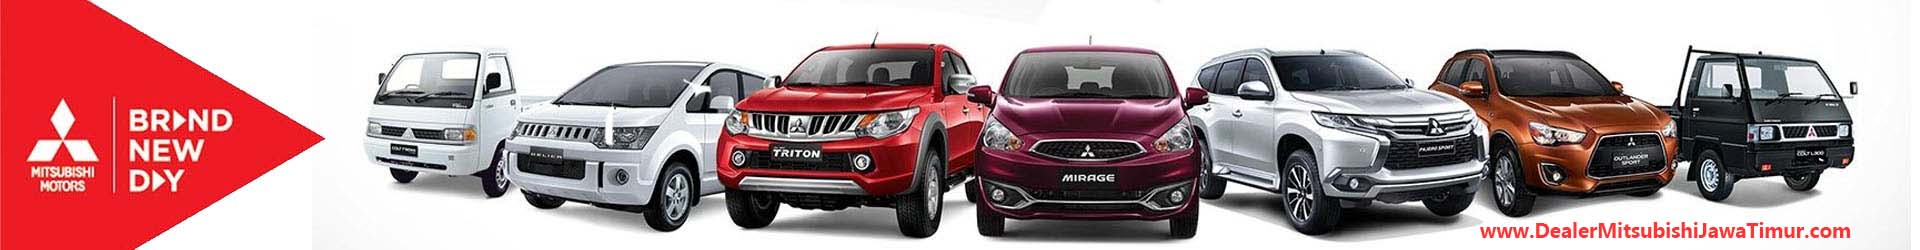 Info dan Promo Harga Mitsubishi All New Pajero Surabaya Sidoarjo JawaTimur 083831020661